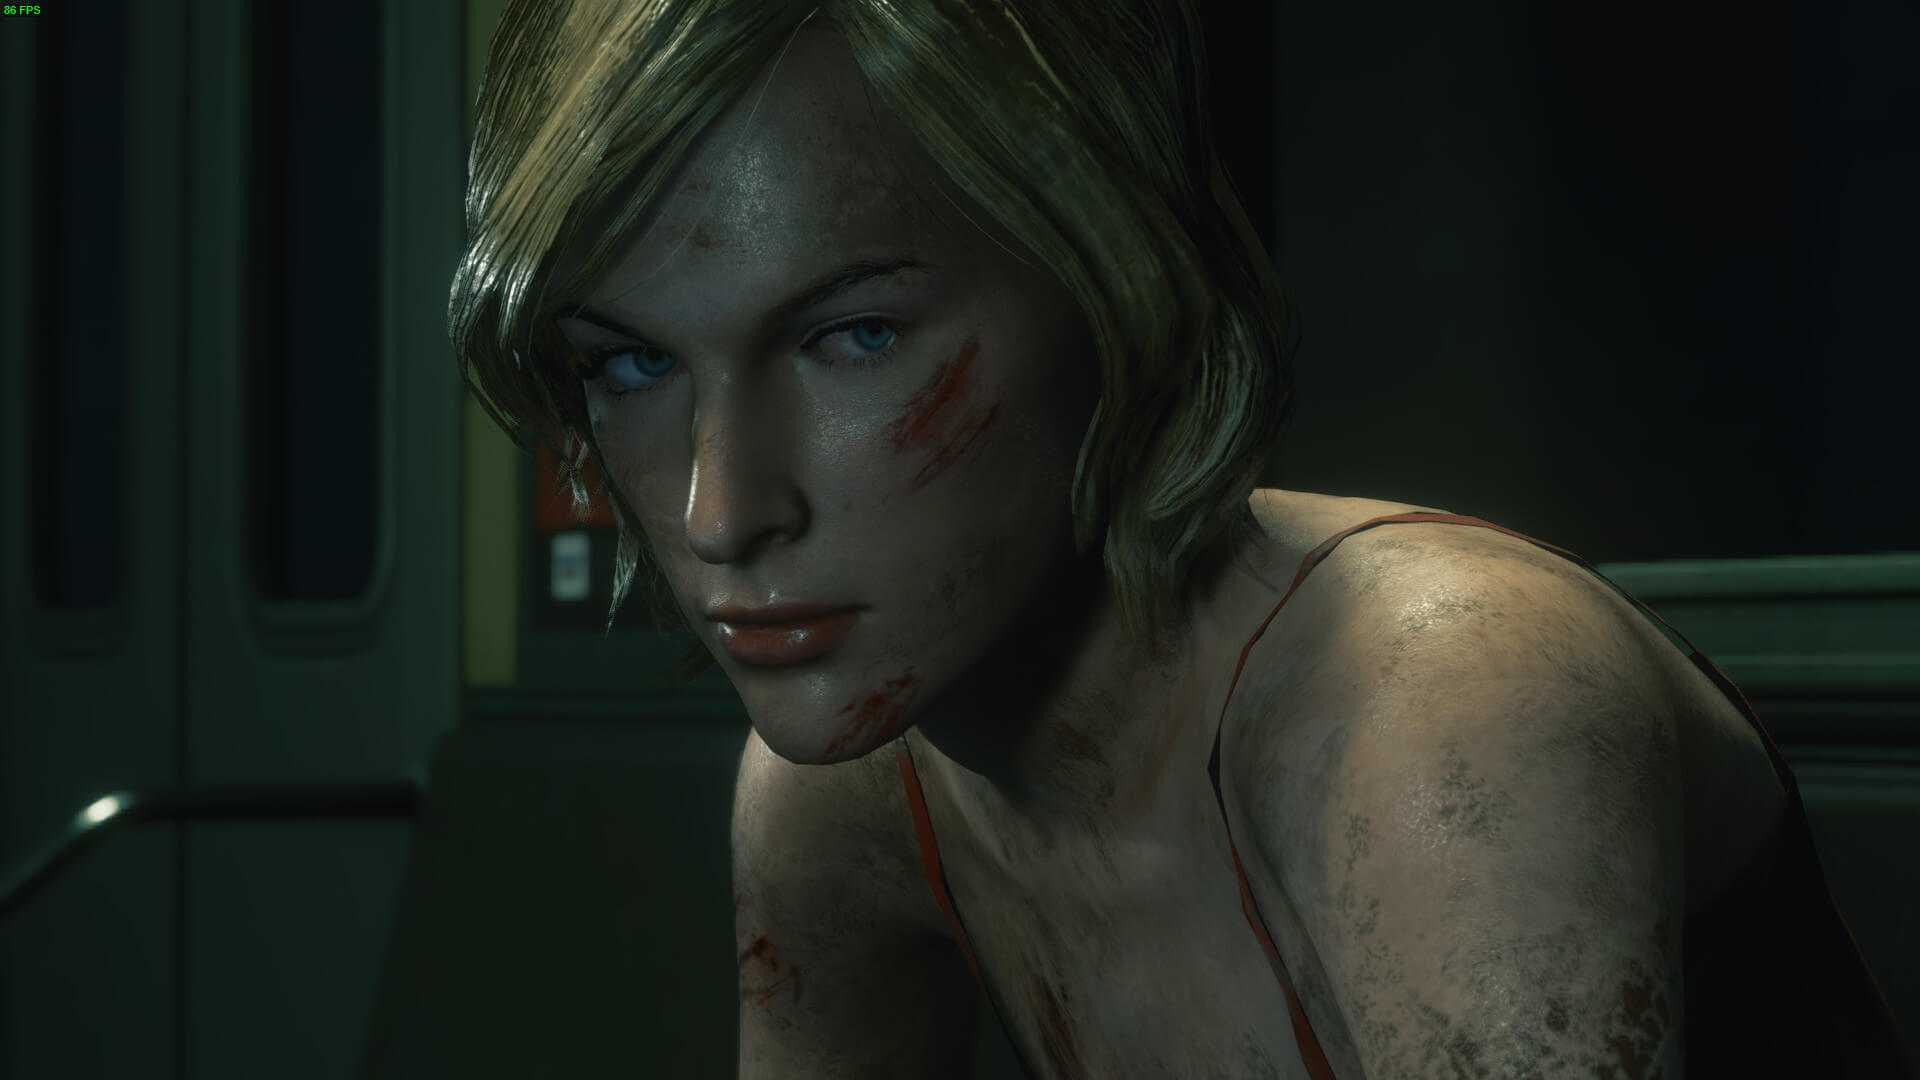 Элис, сыгранная Миллой Йовович в кинофраншизе Обитель зла, давно стала культовым персонажем Несмотря на это, в играх Resident Evil она никогда не появлялась Давайте разберемся, почему